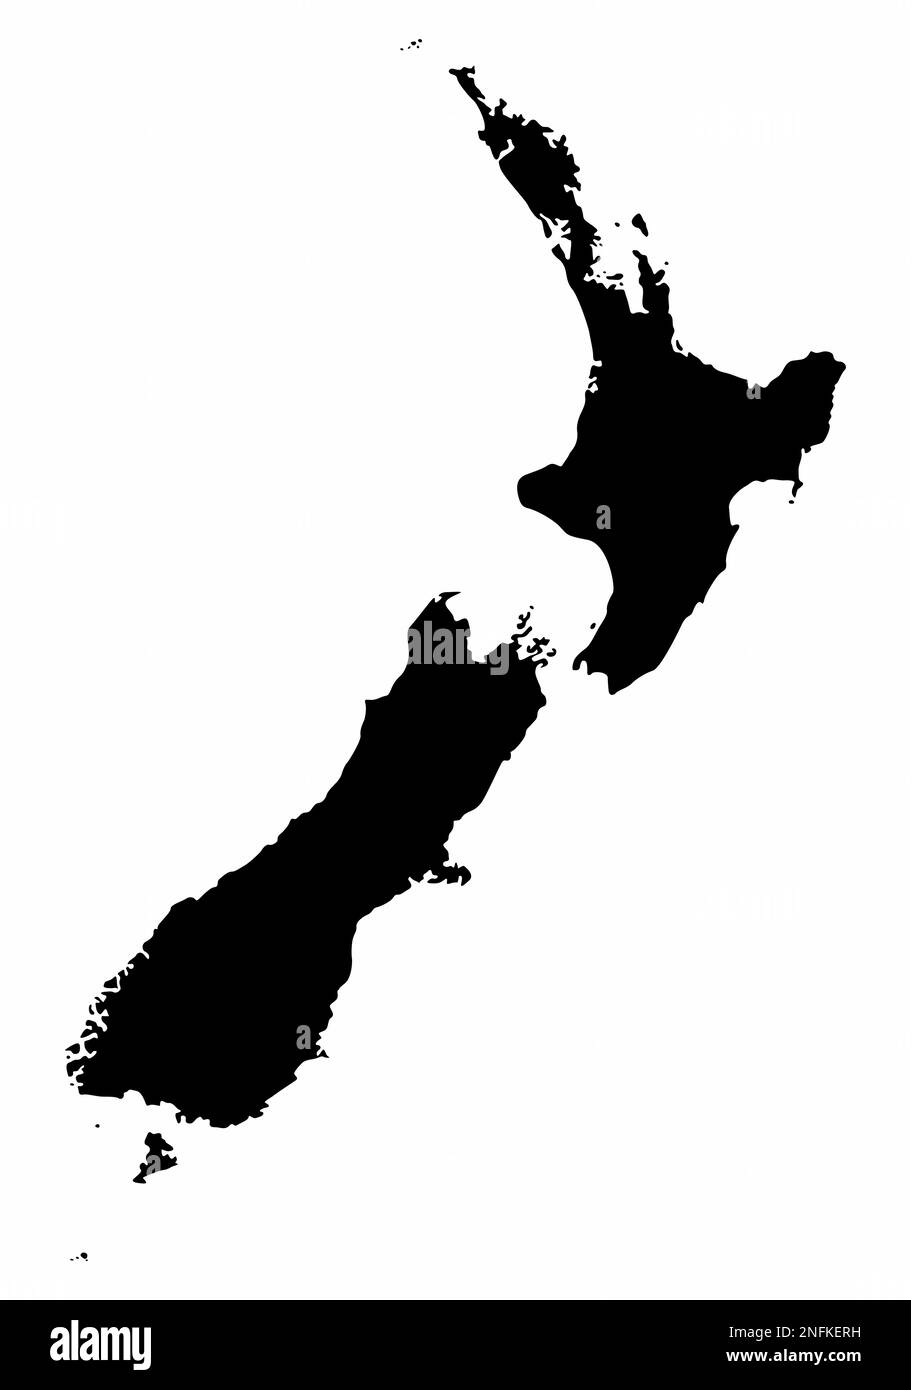 Silhouette de carte de la Nouvelle-Zélande isolée sur fond blanc Illustration de Vecteur